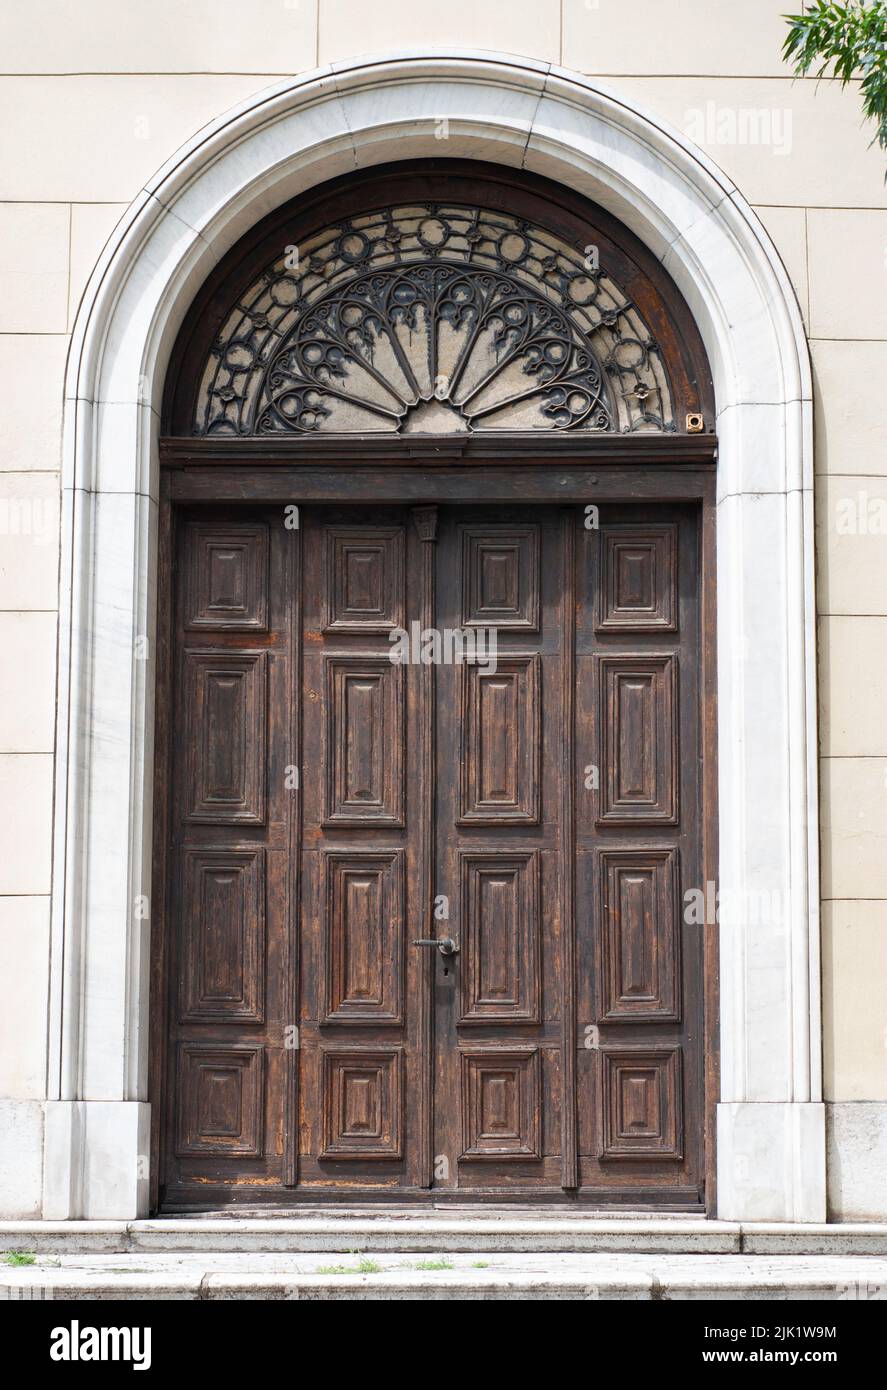 Questa è la zona centrale di Vidin, Bulgaria, una città sul Danubio. La vecchia chiesa cristiana cupola ha questo ingresso, doppie porte con pannelli di legno. Foto Stock